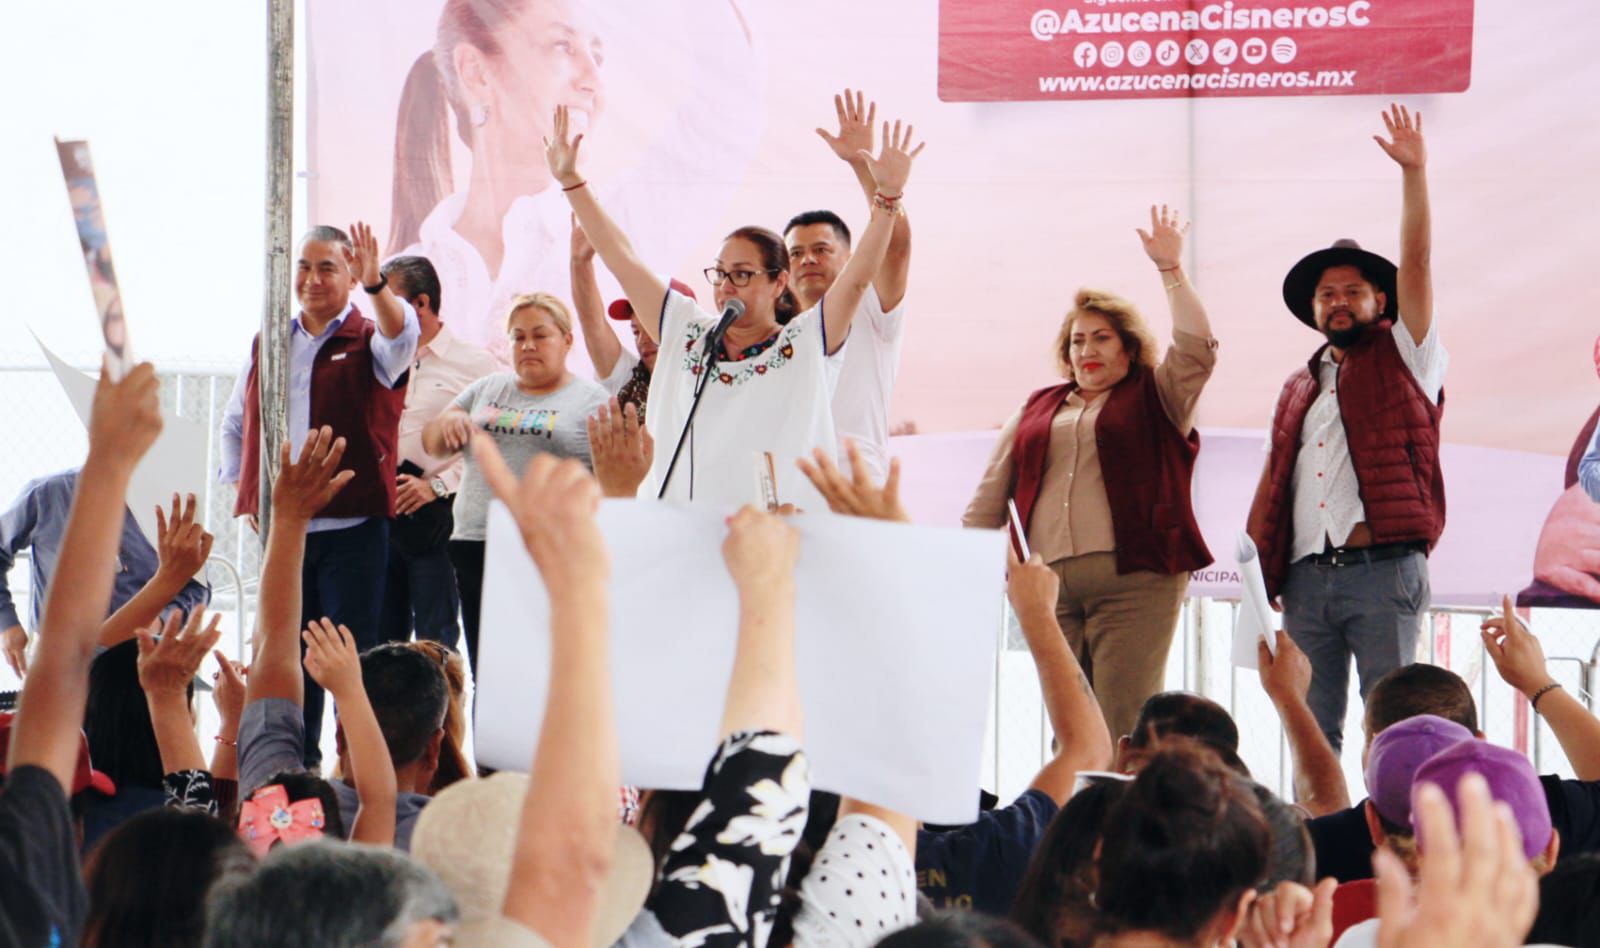 En Ciudad Cuauhtémoc habrá un Centro de Servicios Administrativos, anuncia Azucena Cisneros 